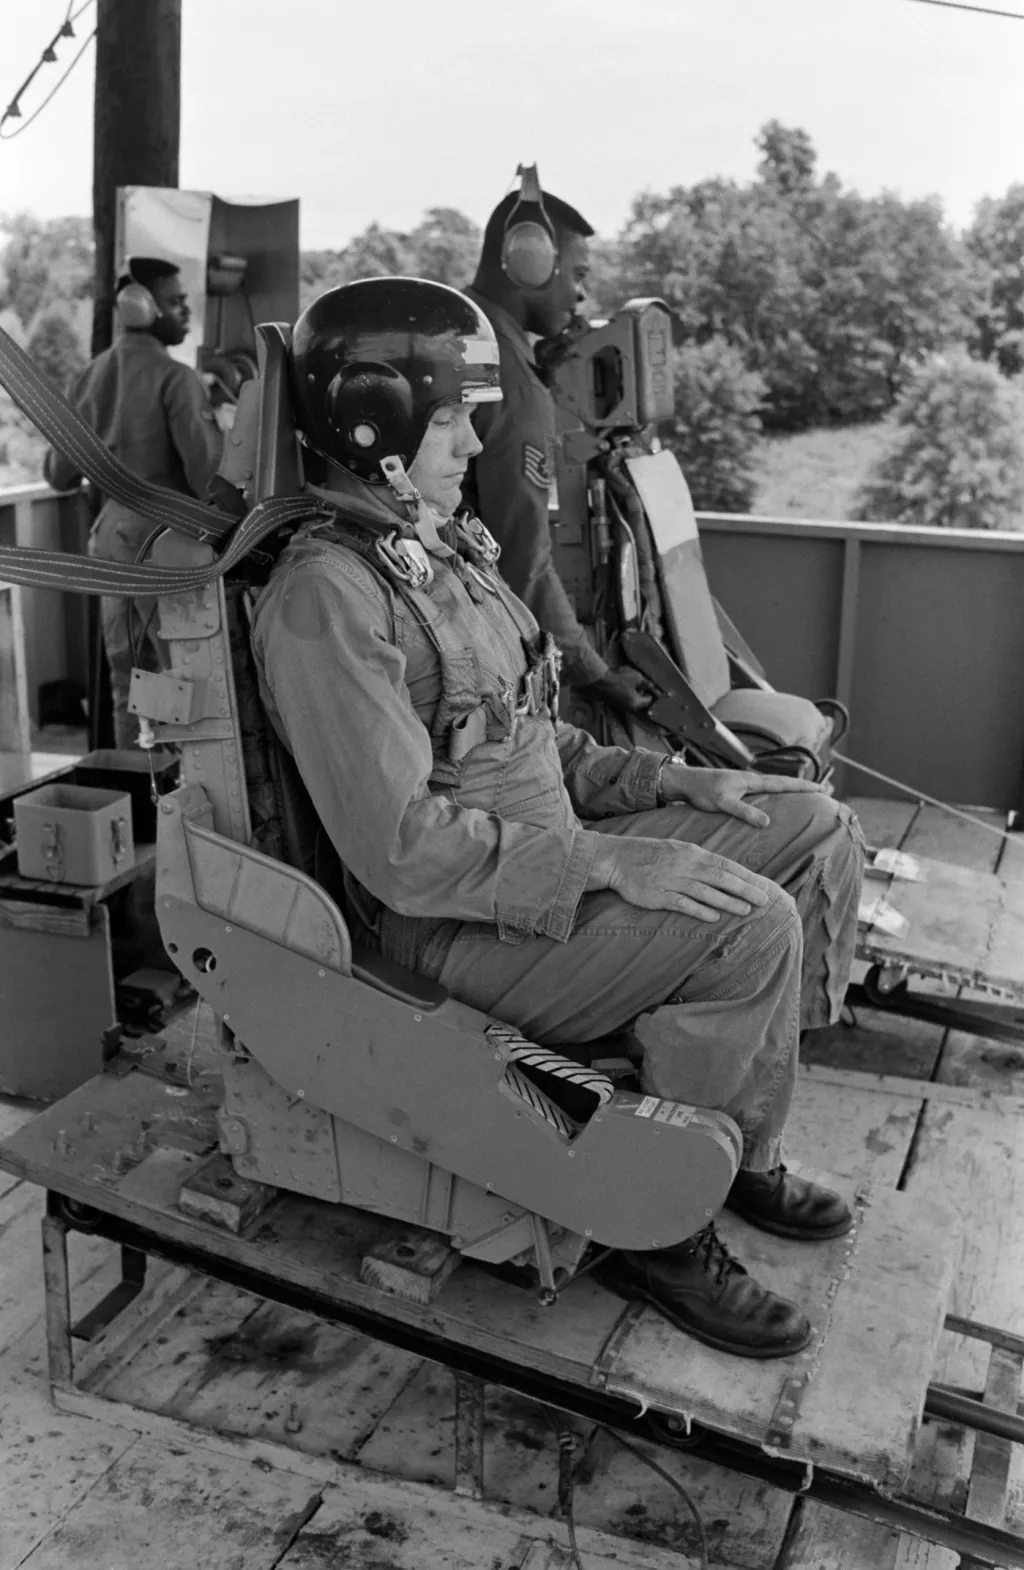 V roce 1967 byly zahájeny přípravy k letu Apolla 11. Astronaut Neil Armstrong je vyfocen během výcviku na padáku na základně Perrin Air Force Base v Shermanu 27. května 1968